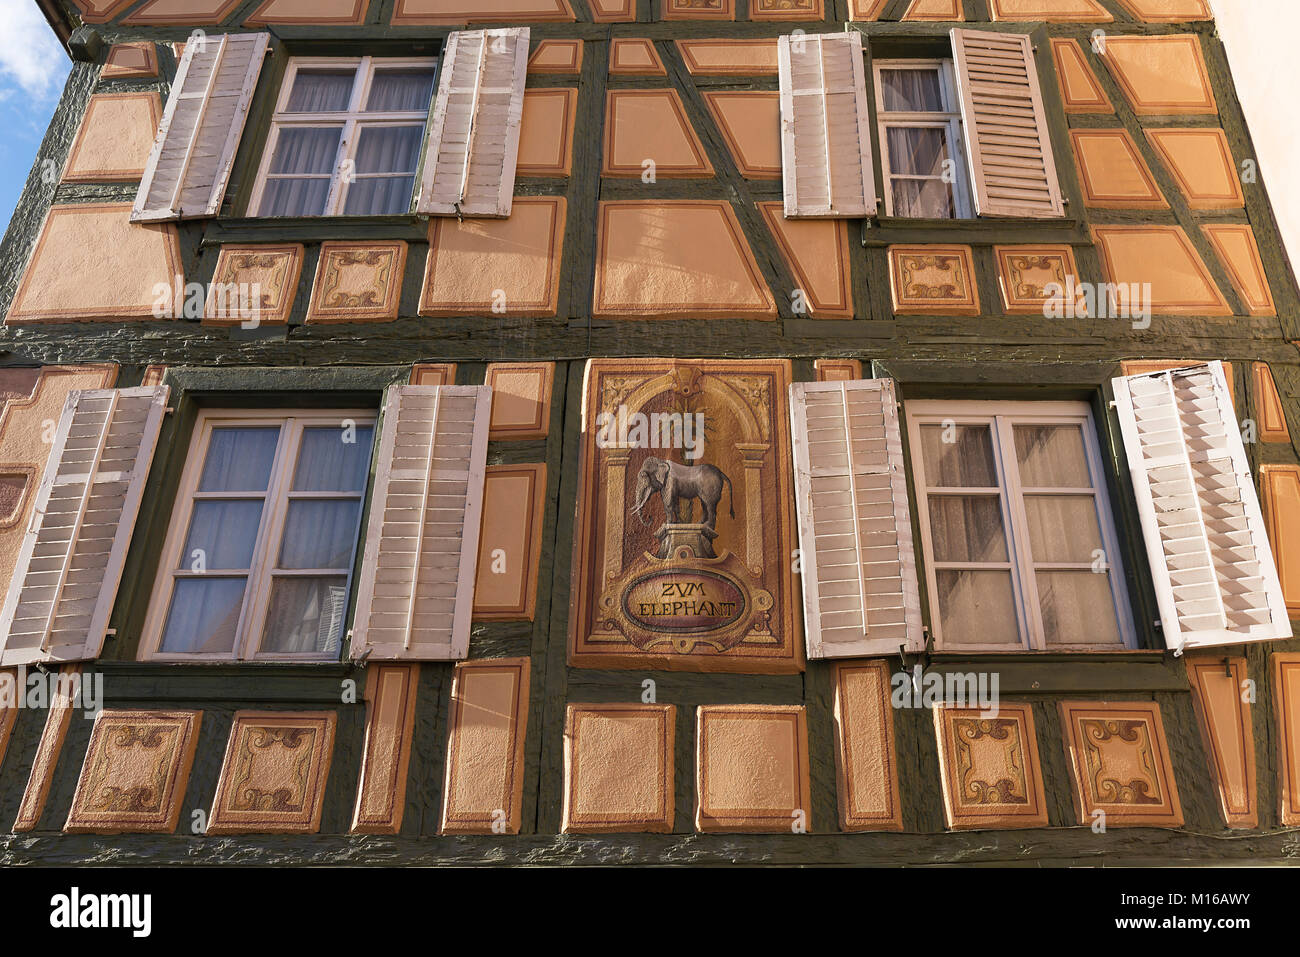 Fassade des Hotel Zum Elefant, historische Fachwerkhaus aus dem 15. Jahrhundert, Ribeauvillé, Elsass, Frankreich Stockfoto